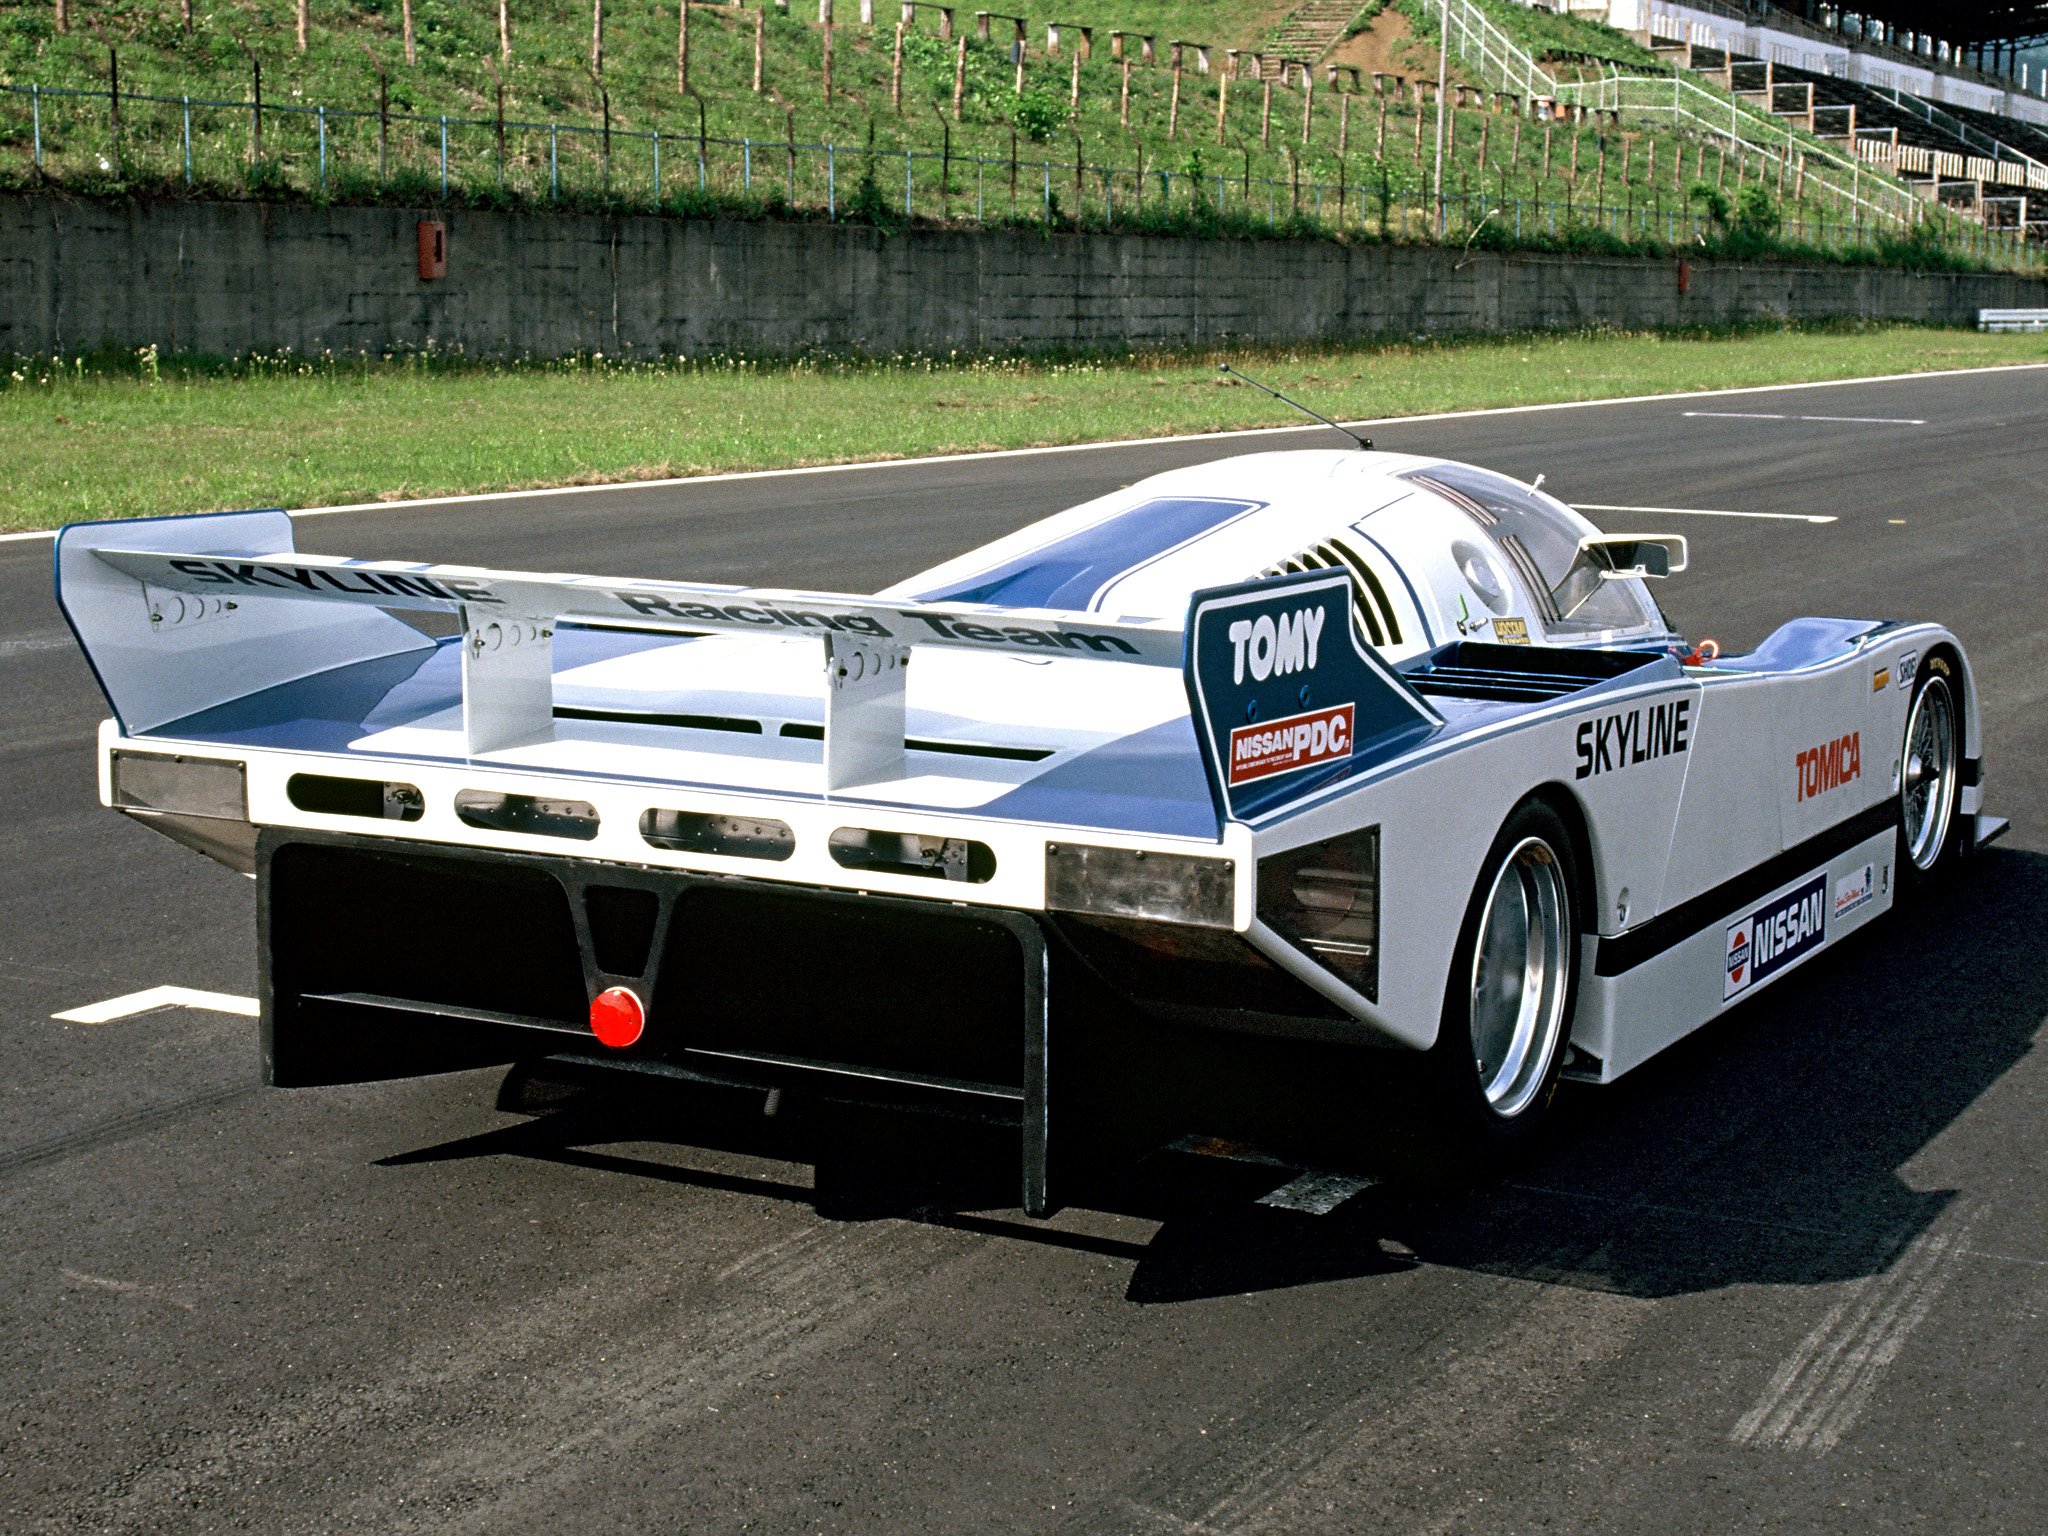 1985, Nissan, Skyline, Turbo, Group c, Le mans, Lemans, Race, Racing Wallpaper